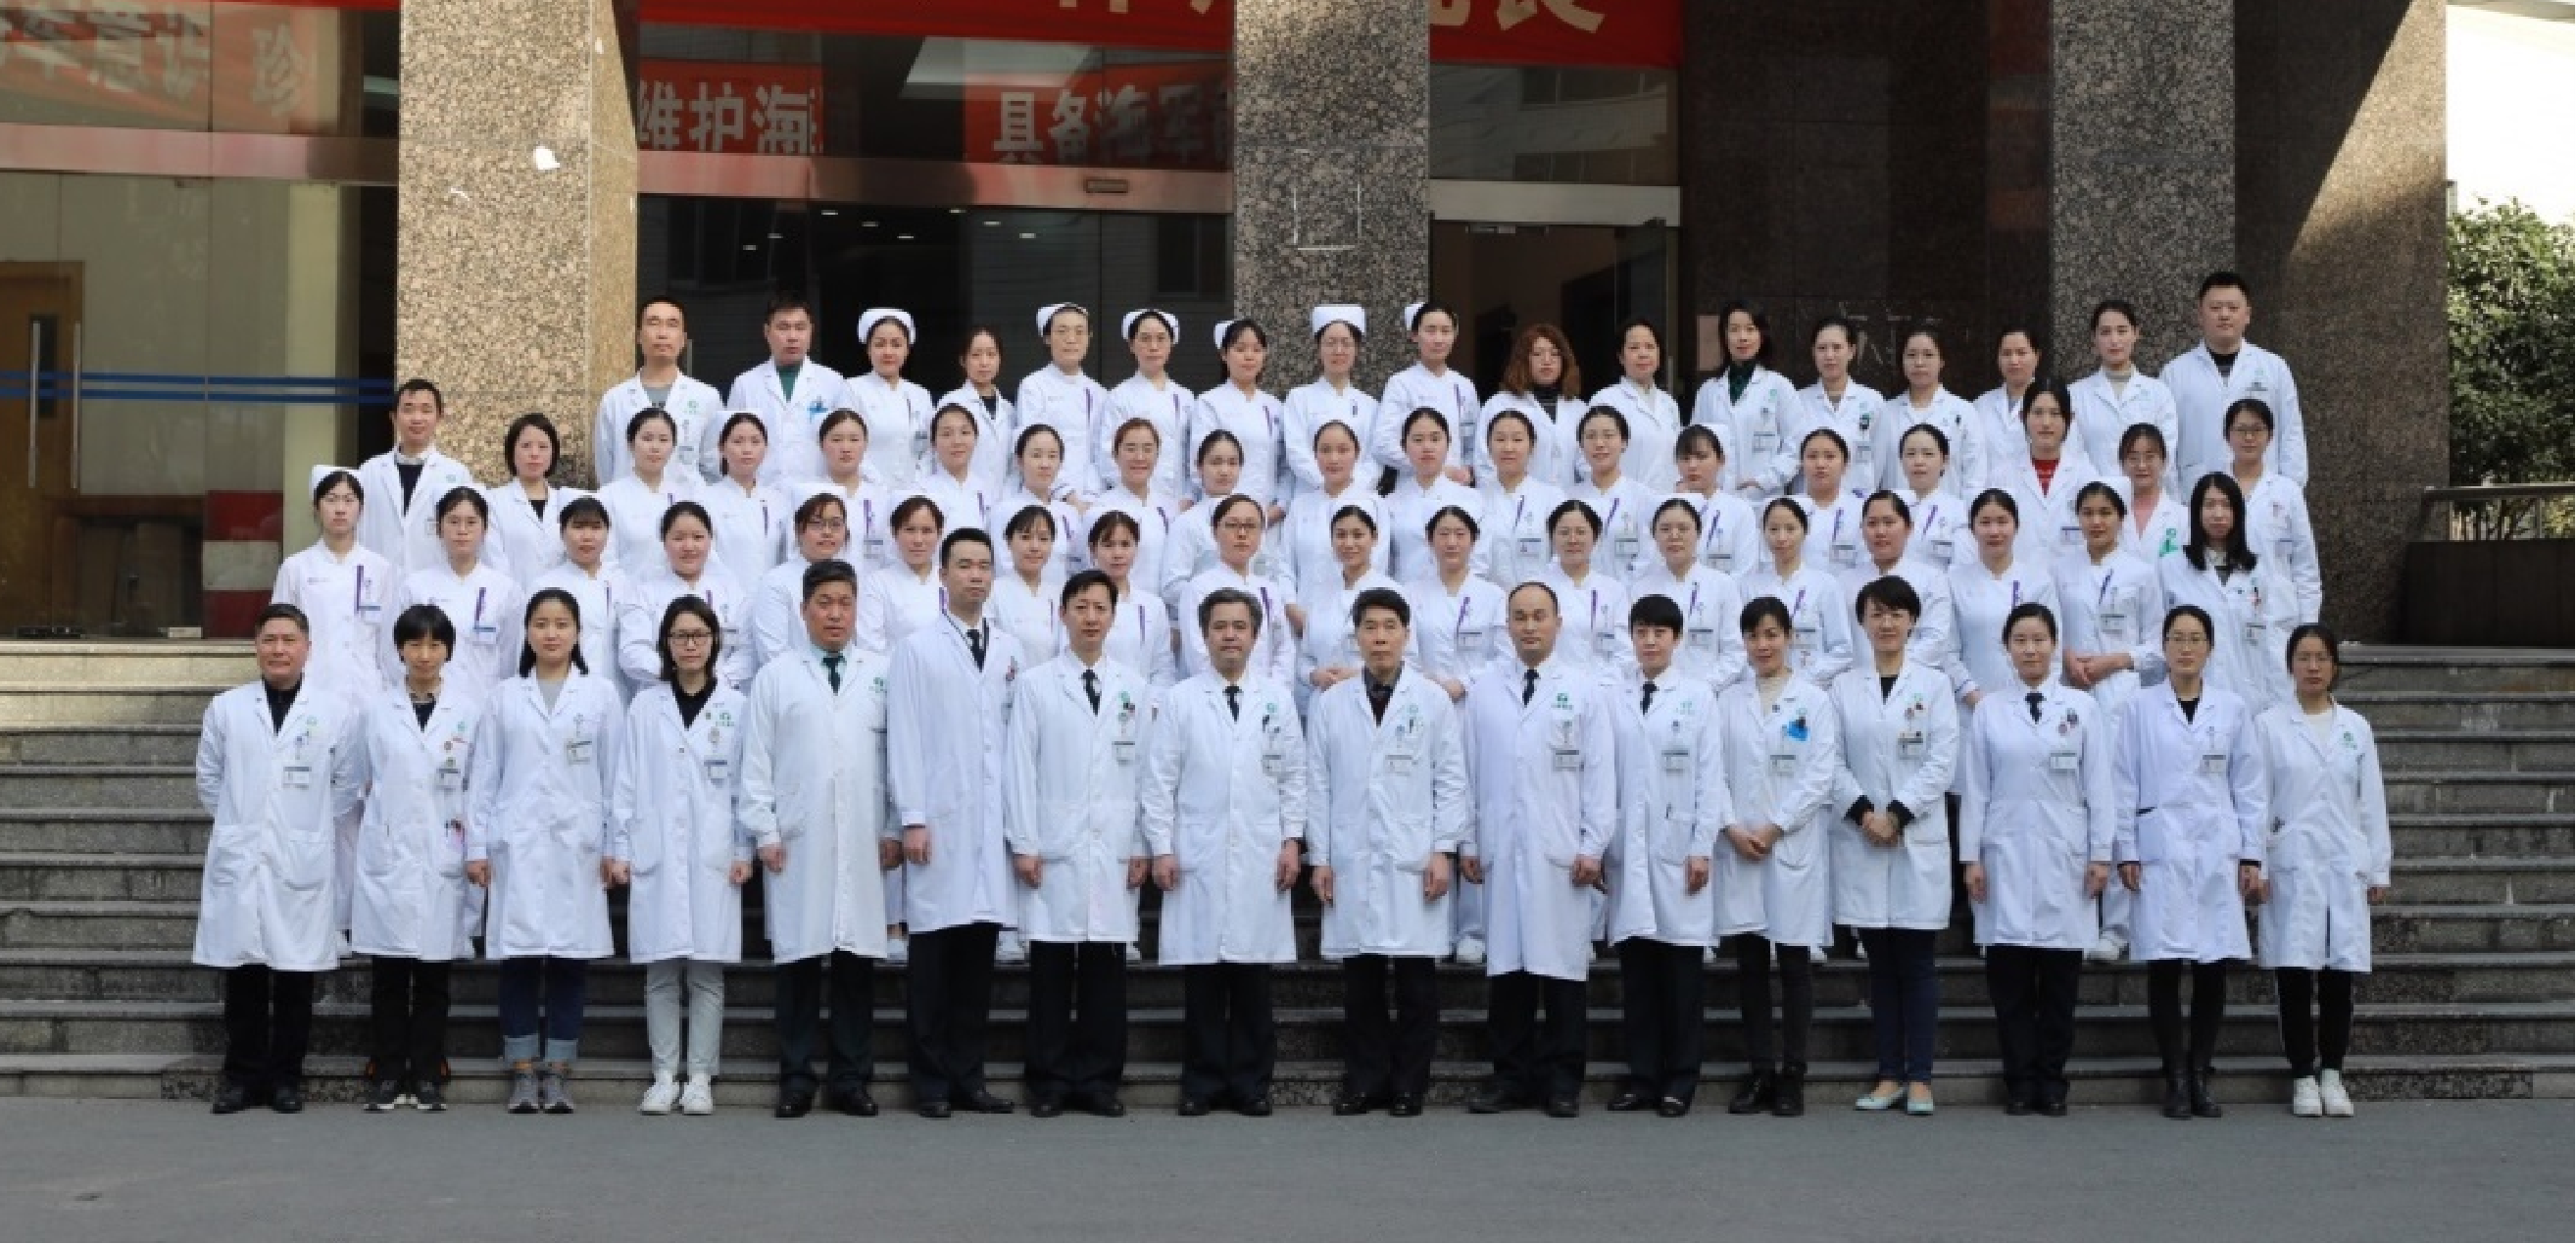 长海医院 团队 照片1.png